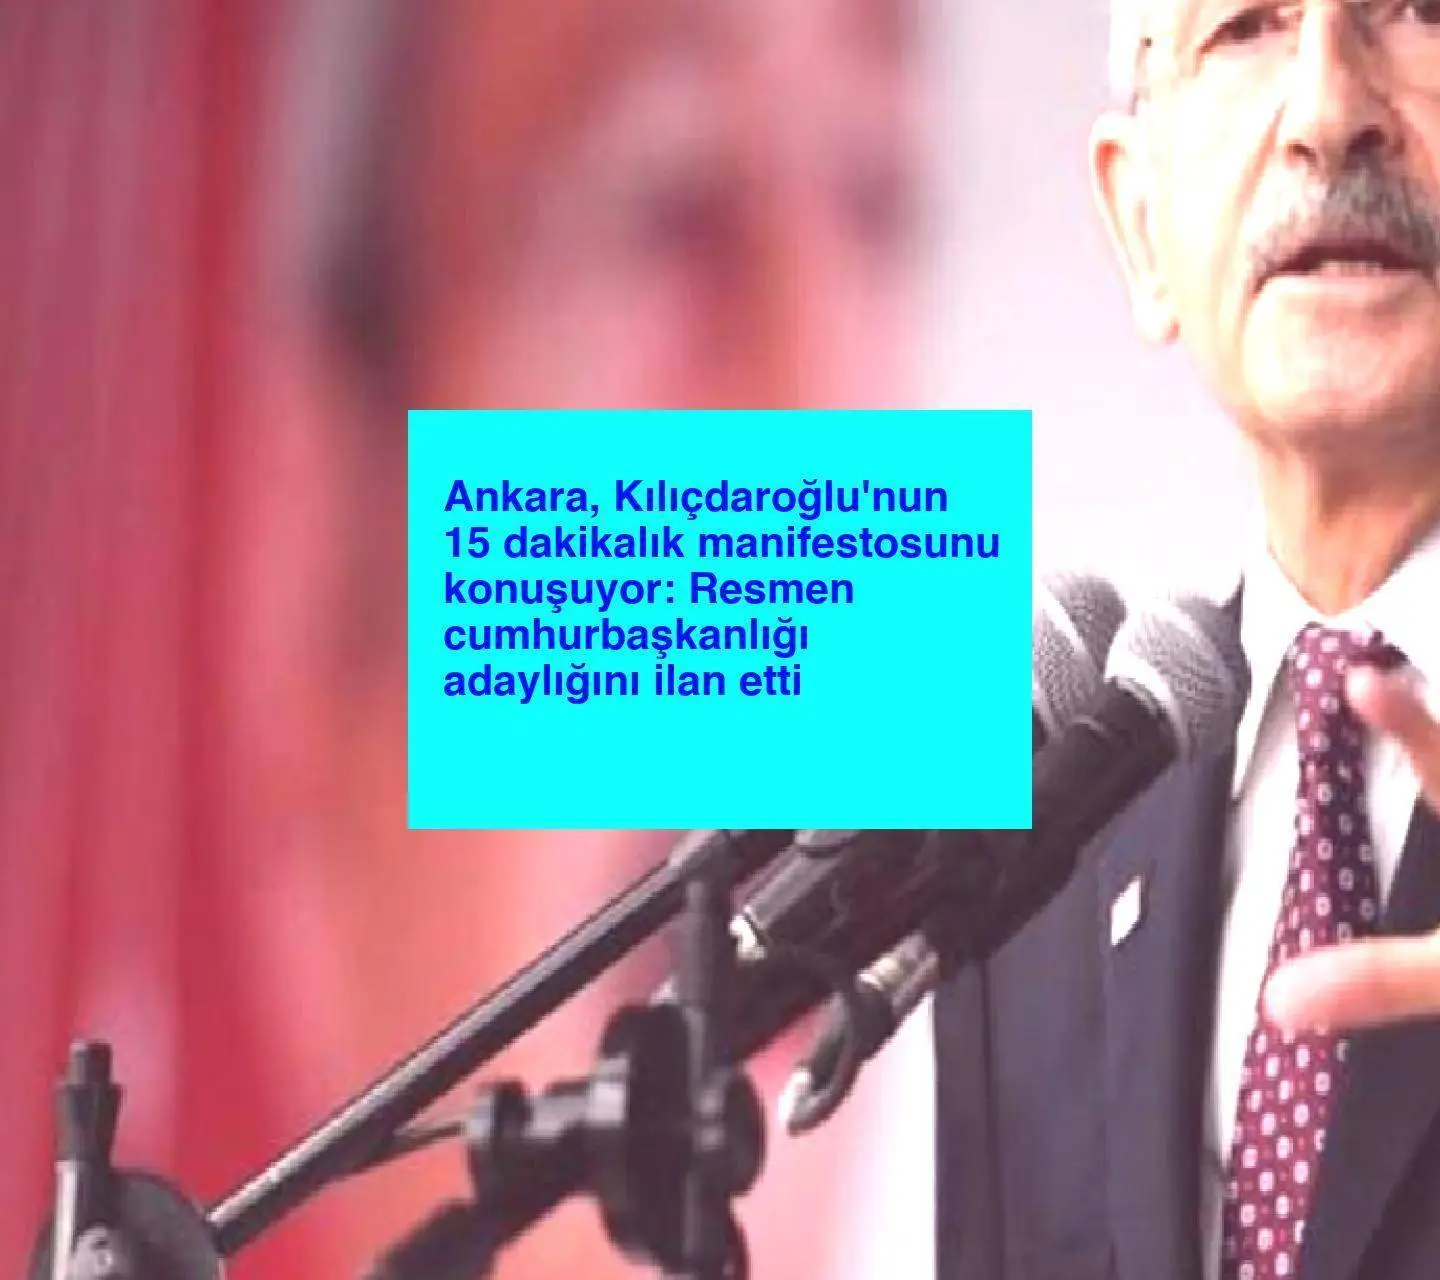 Ankara, Kılıçdaroğlu’nun 15 dakikalık manifestosunu konuşuyor: Resmen cumhurbaşkanlığı adaylığını ilan etti